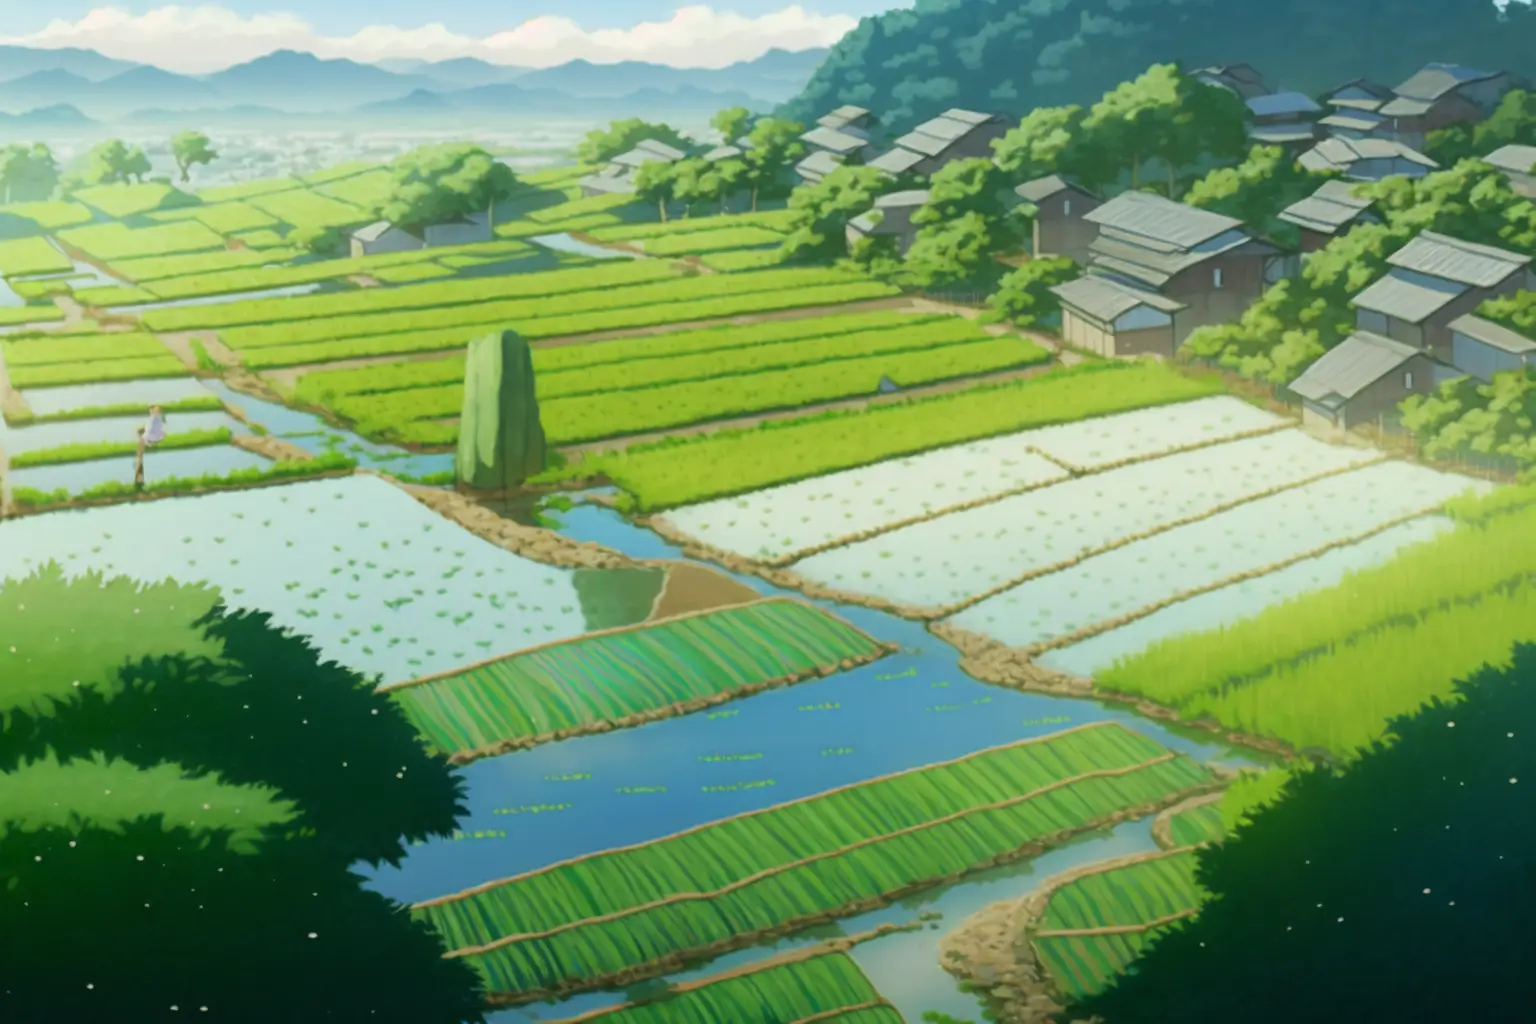 A Serene Studio Ghibli Image Of Terraced